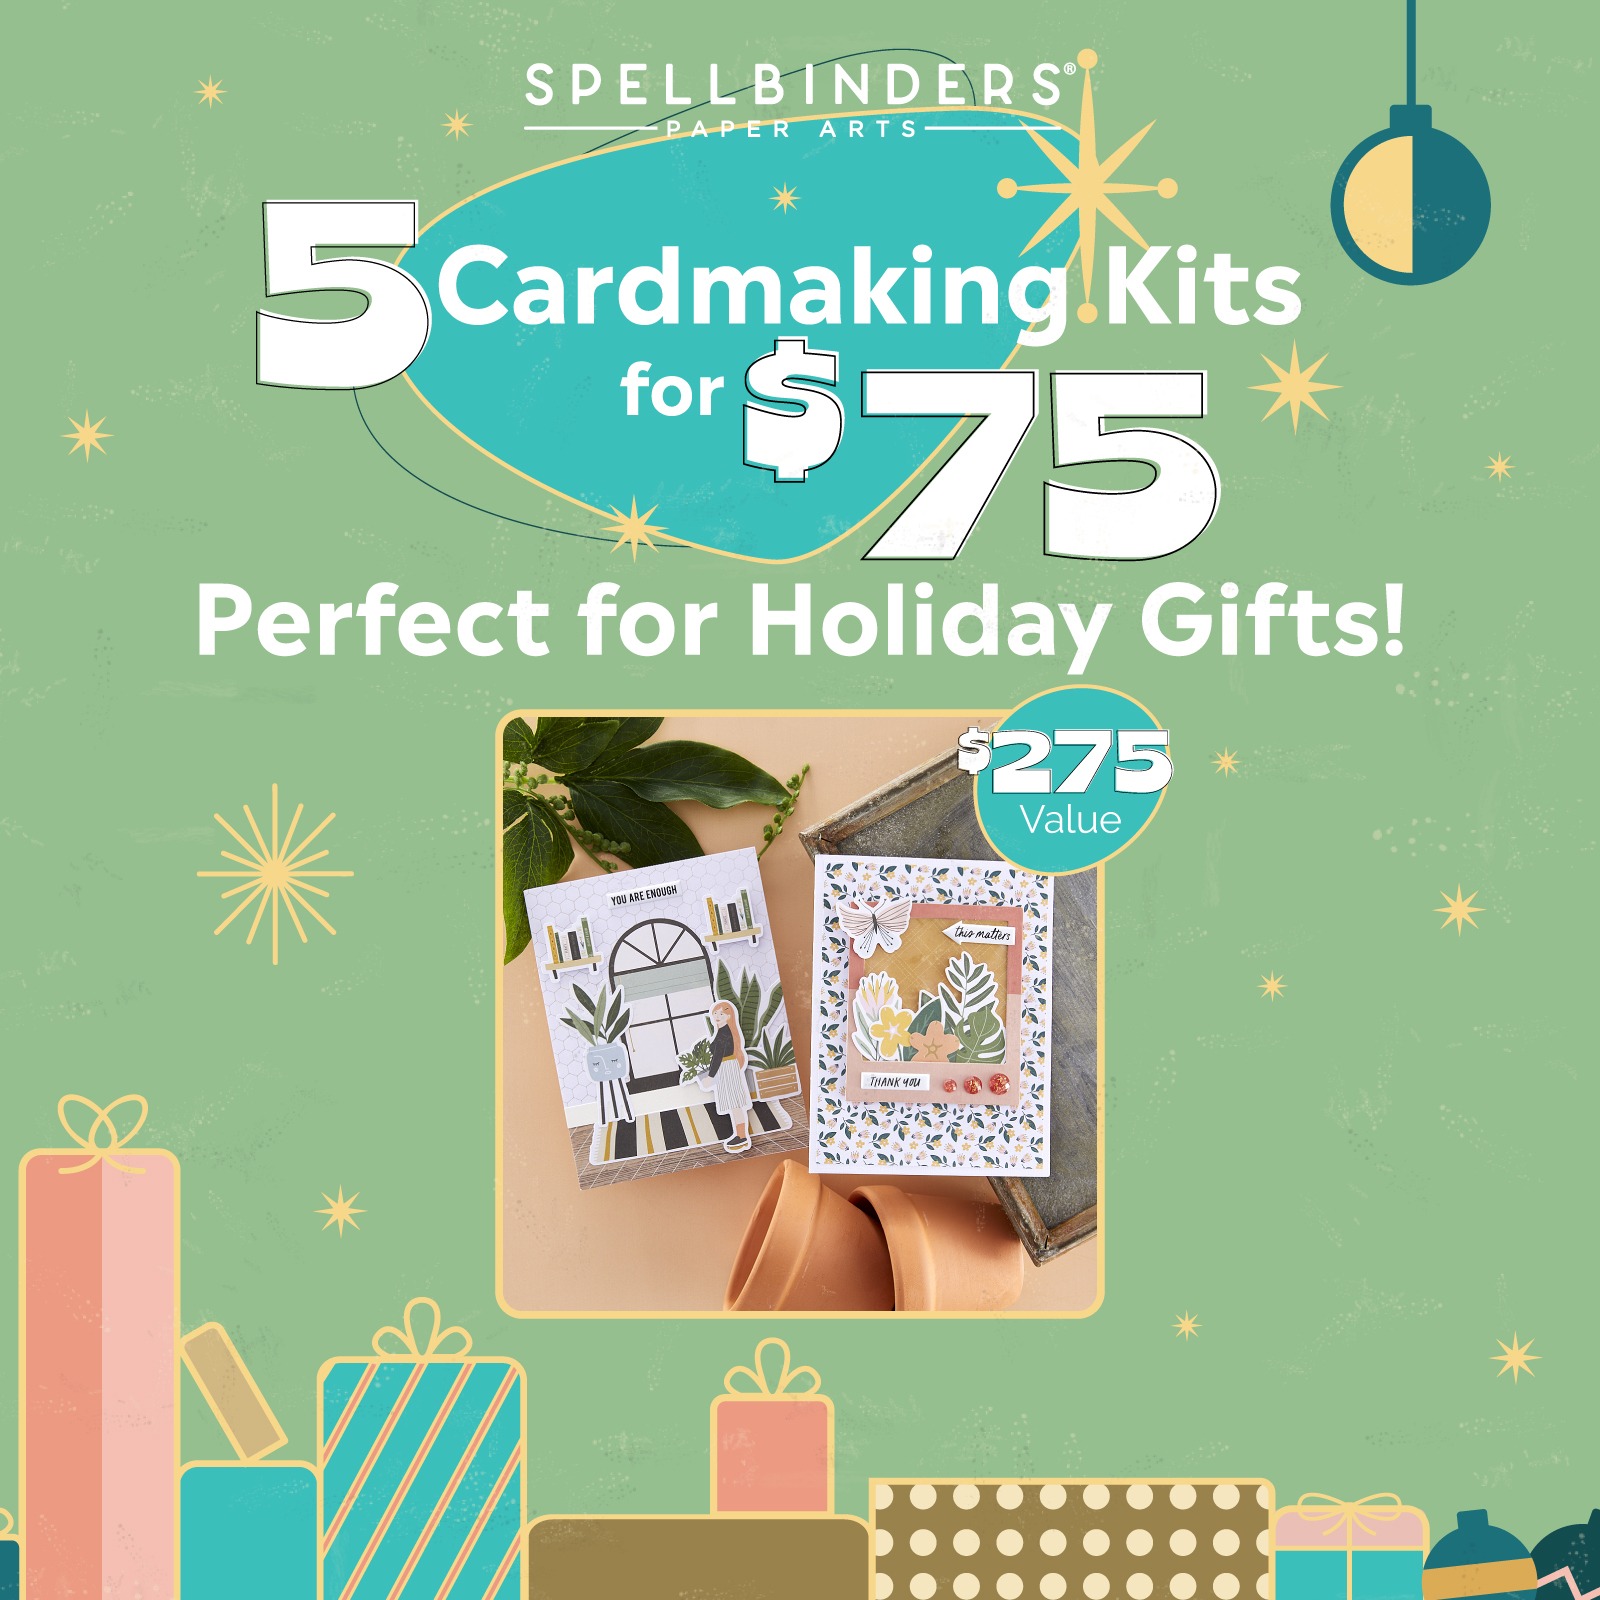 Spellbinders Cardmaking Kits Promotion